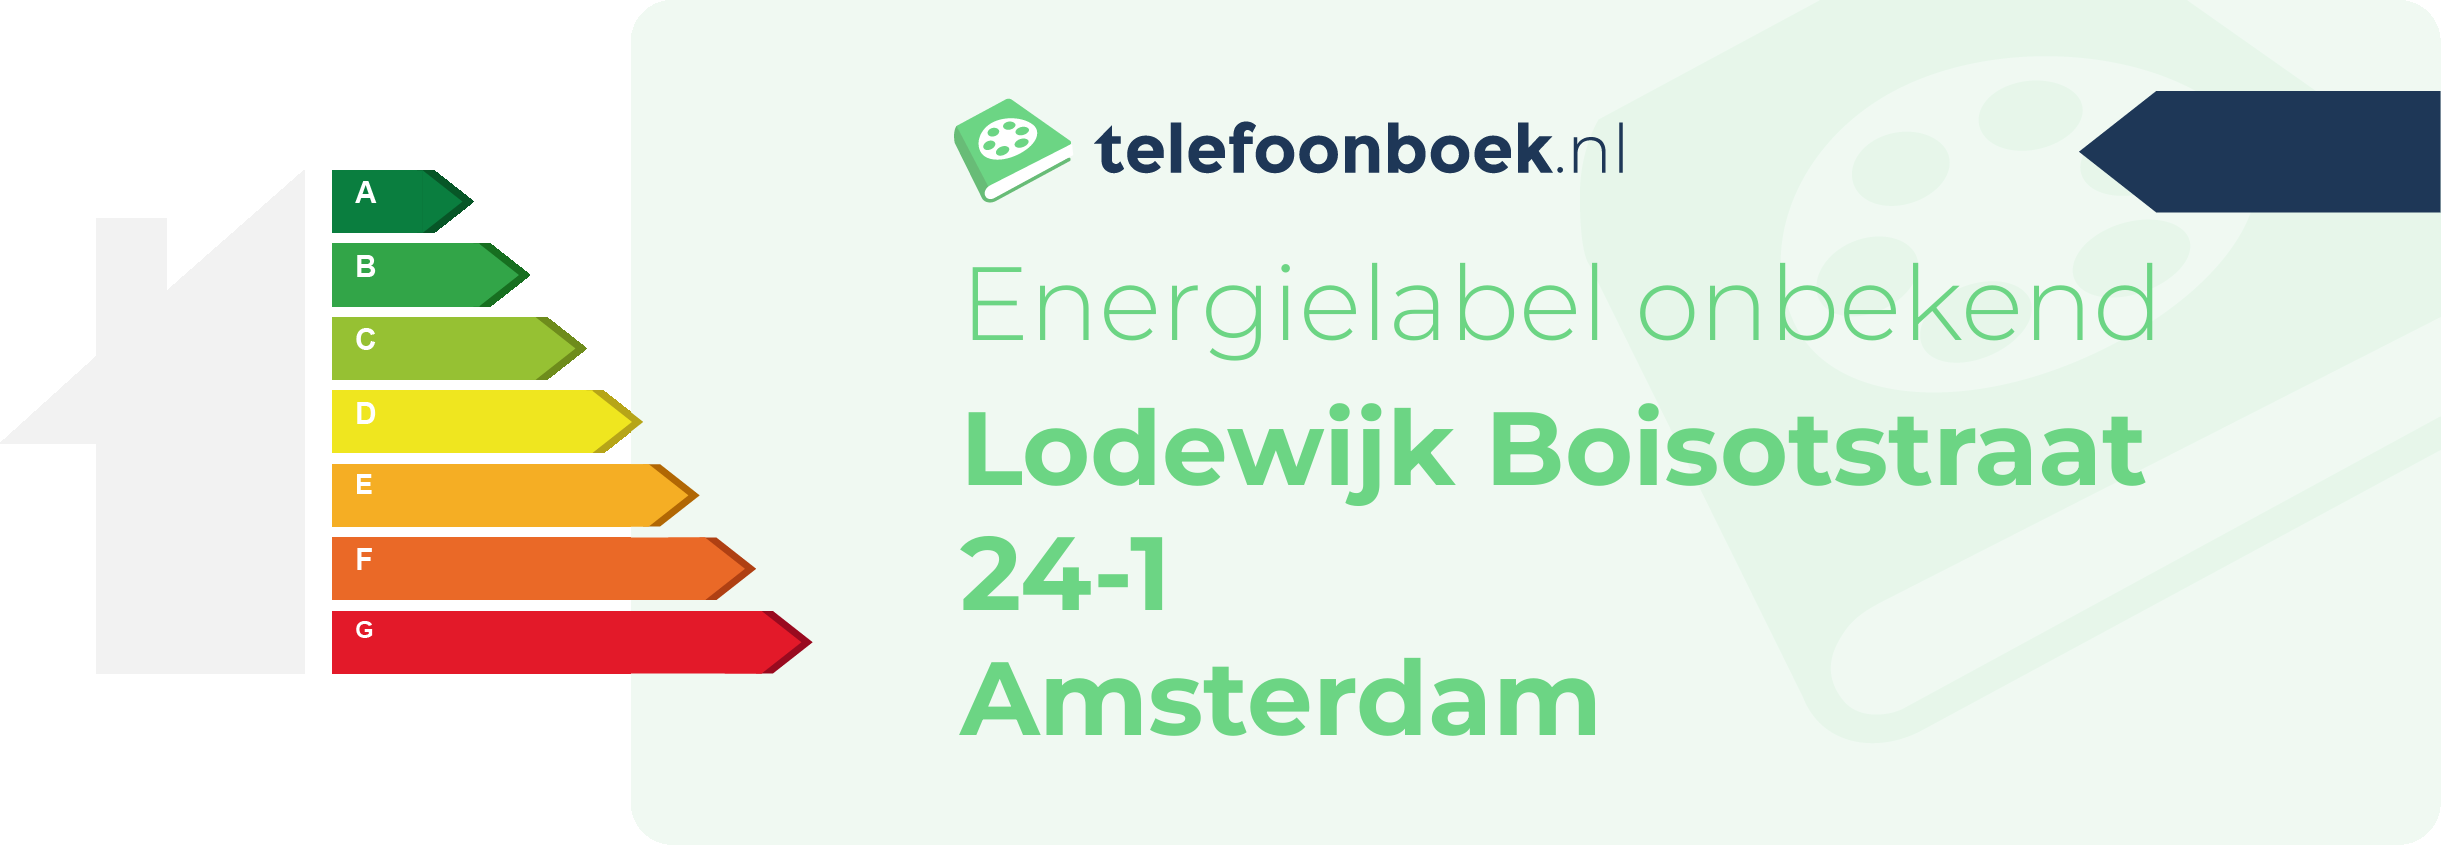 Energielabel Lodewijk Boisotstraat 24-1 Amsterdam